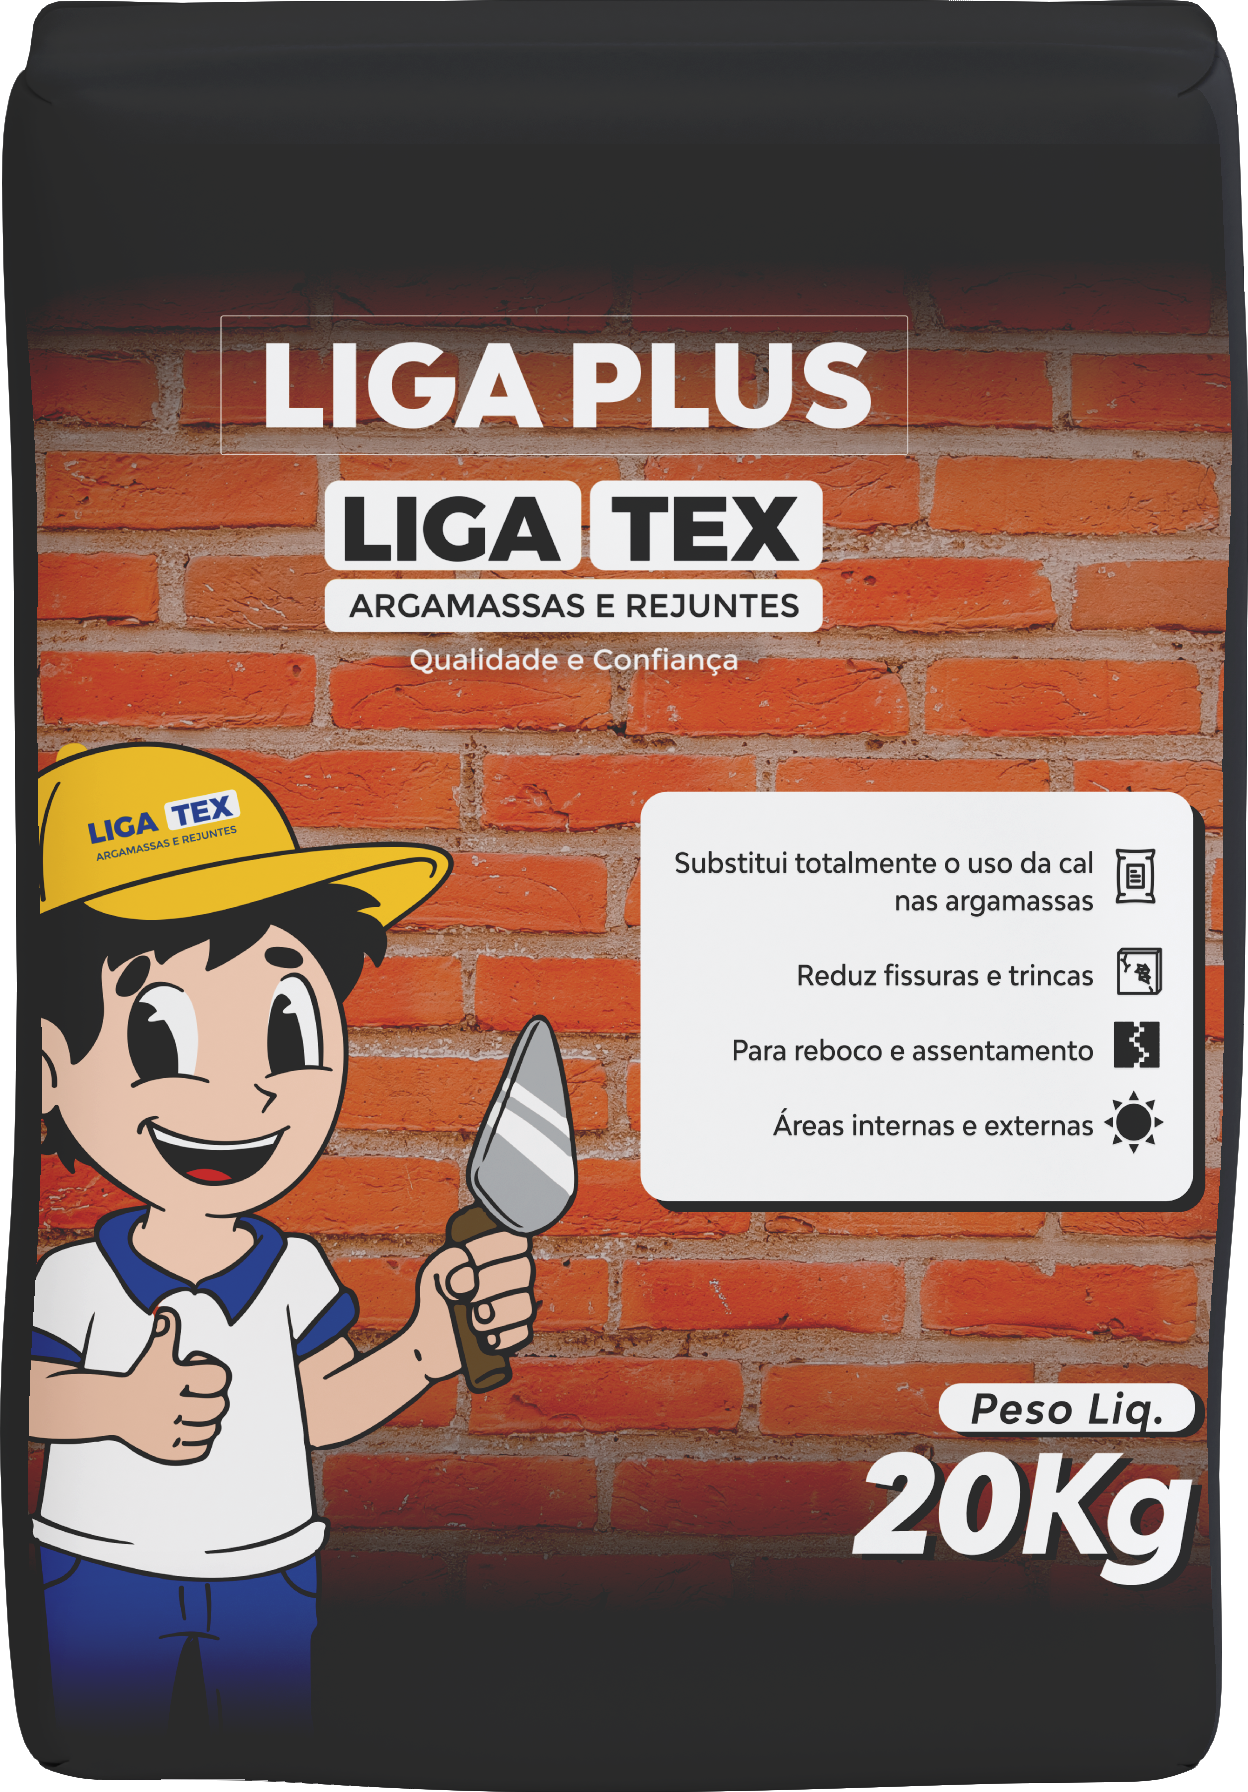 Liga Plus Ligatex